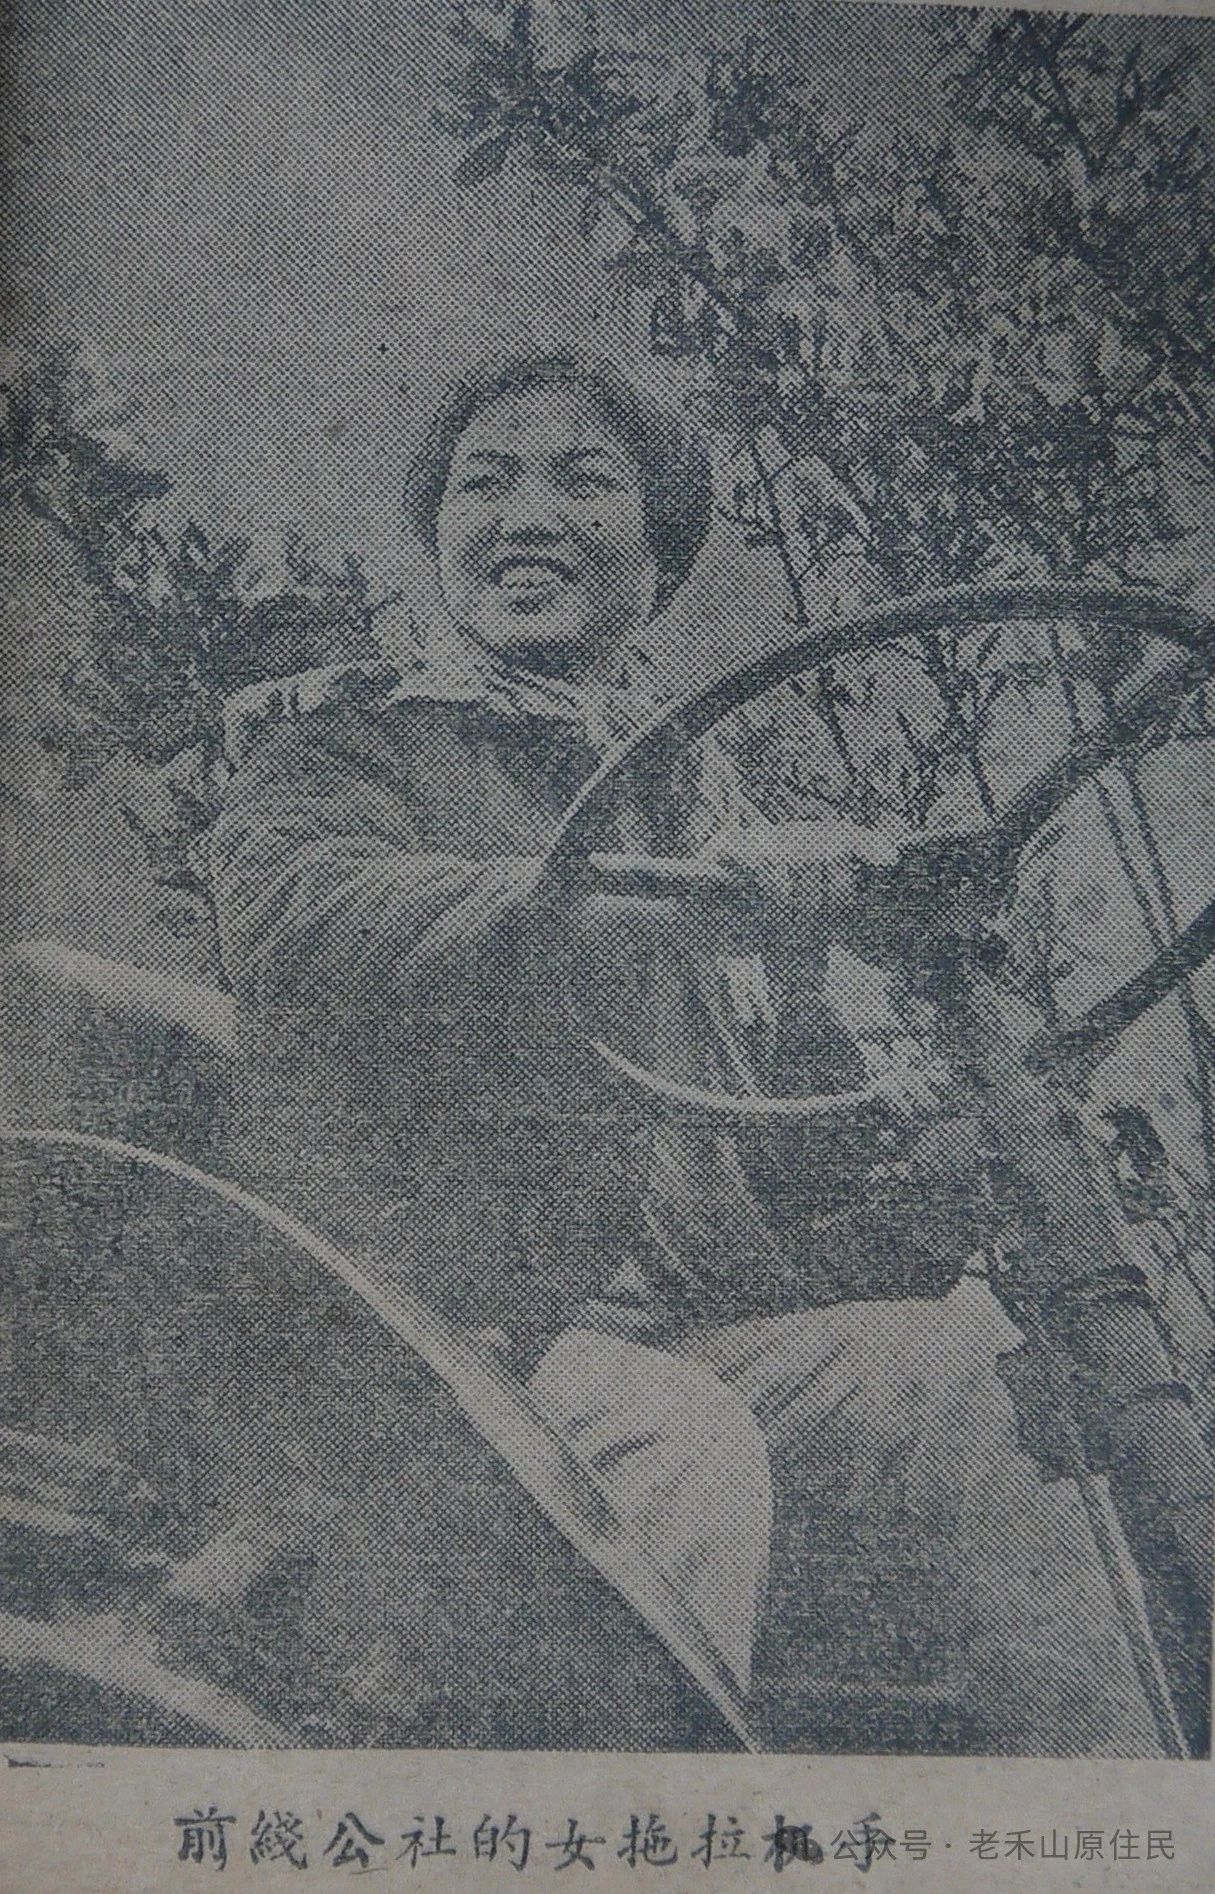 老禾山照片的故事之18 前线公社女拖拉机手